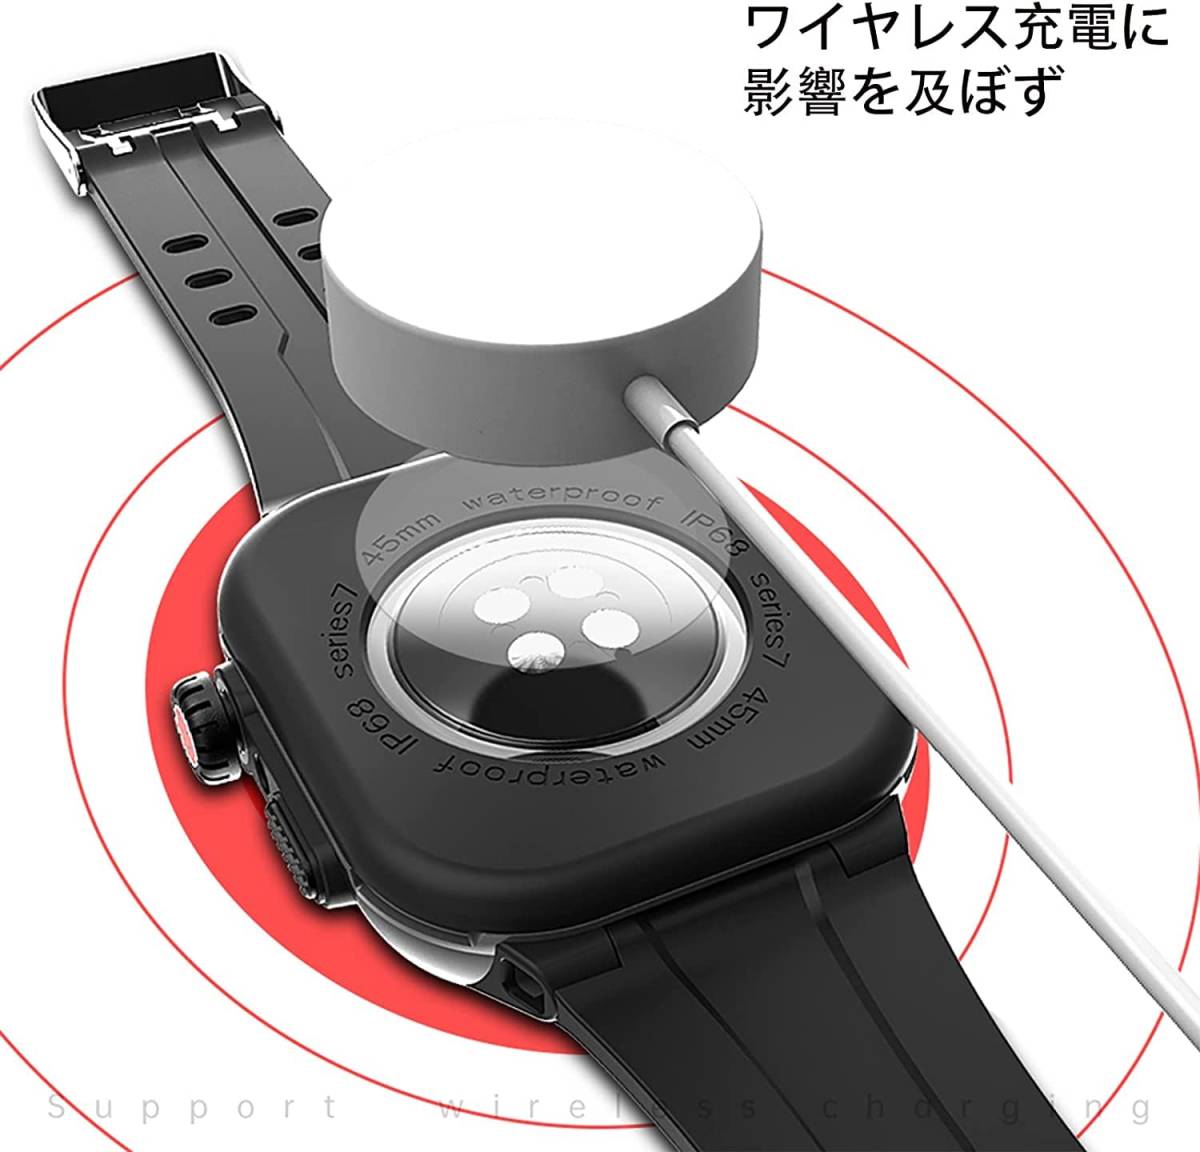 【新着商品】Watch Ultra Ultra 49mm 用 Watch ケース 360度全面防水 バンド ケース 水泳・スポーツ